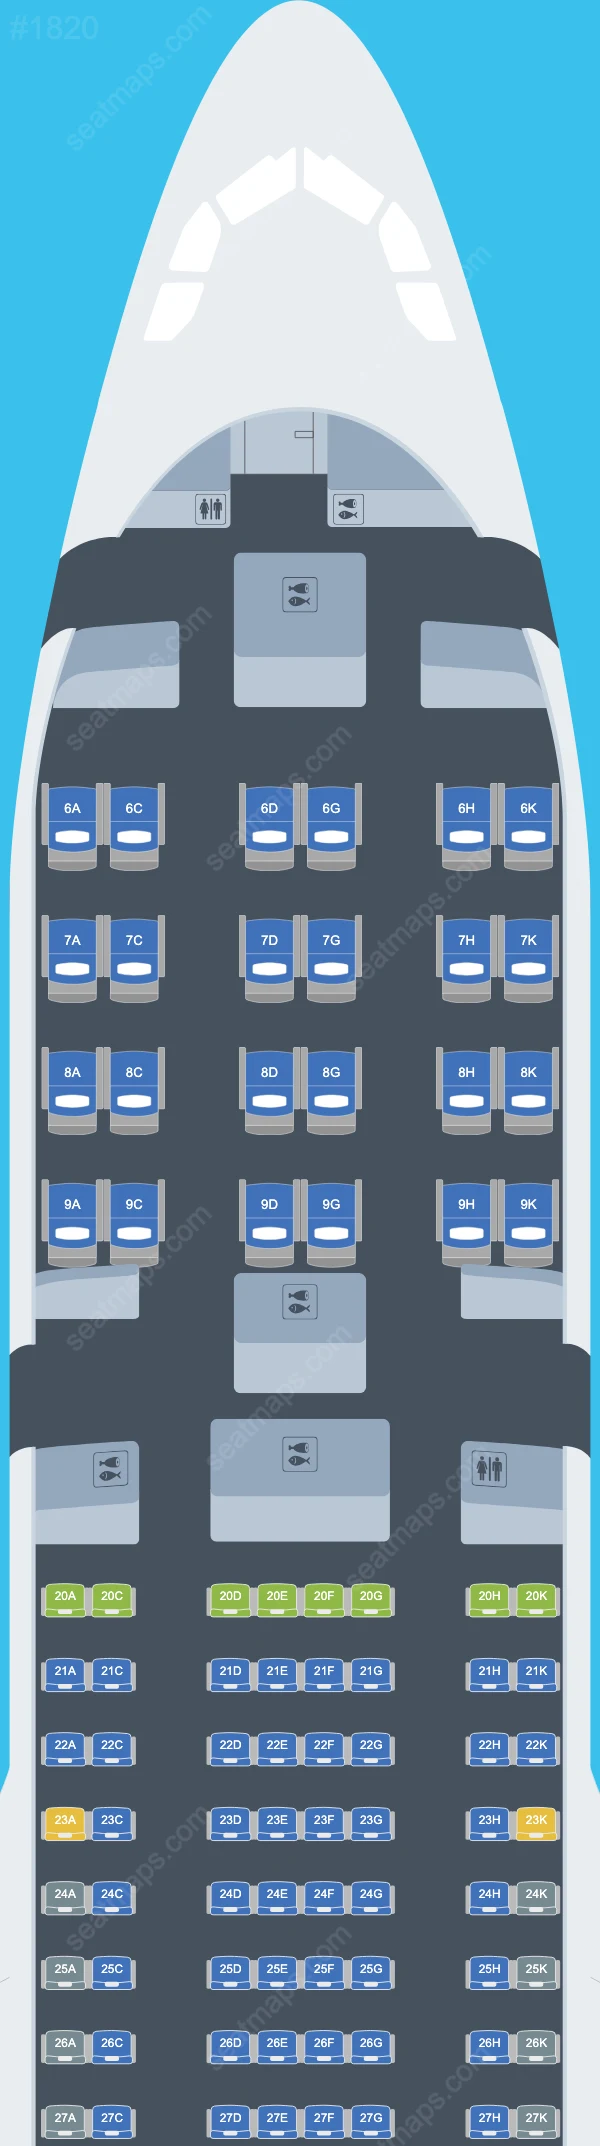 EVA Air Airbus A330 Seat Maps A330-200